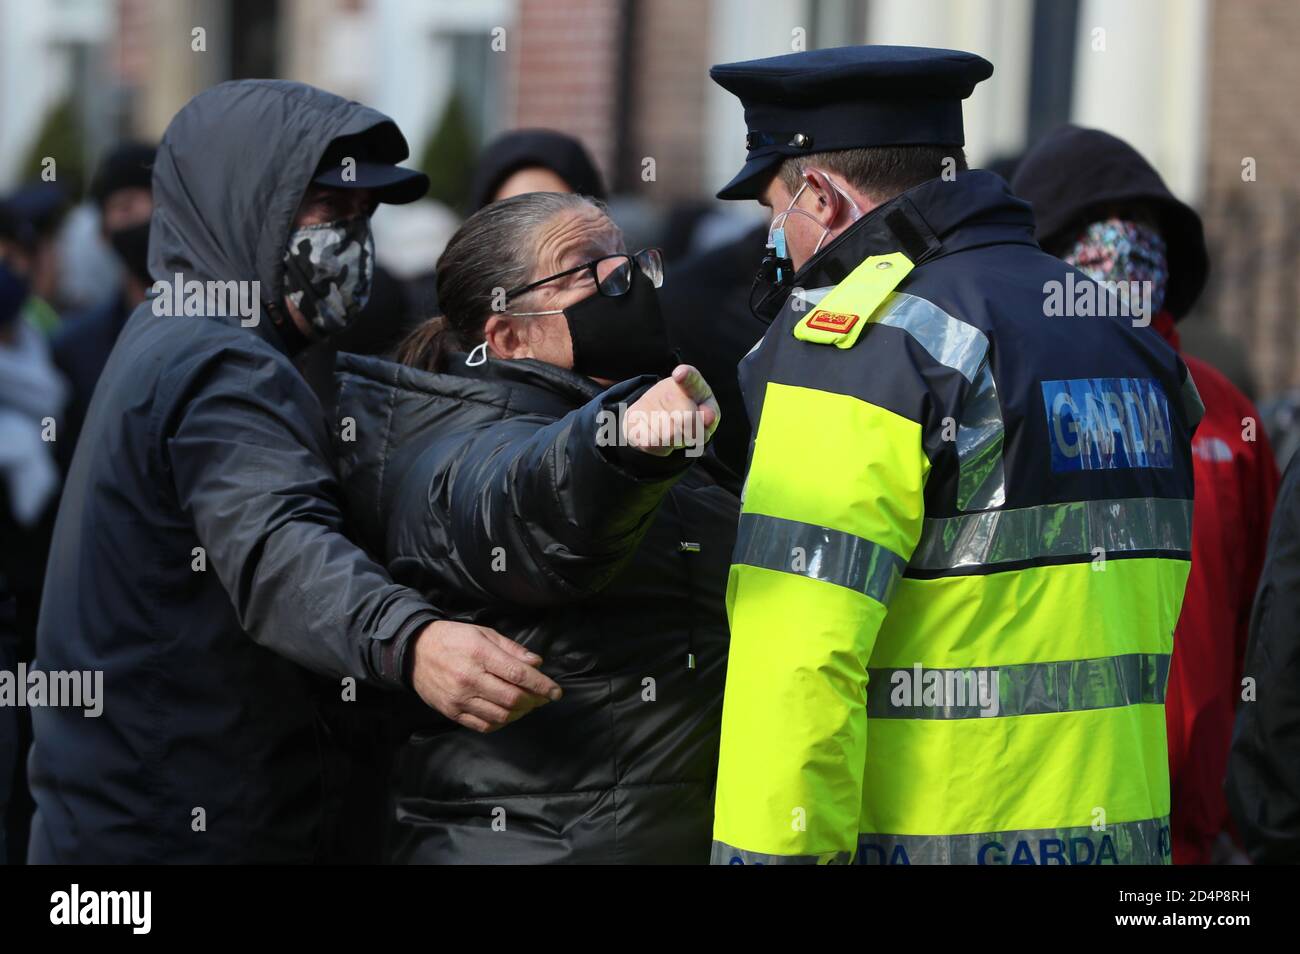 Los manifestantes en contra hablan con miembros de An Garda durante una protesta contra el cierre de la cárcel en las afueras de Leinster House, Dublín, ya que Irlanda sigue estando en un bloqueo nacional del coronavirus de nivel 3. Foto de stock